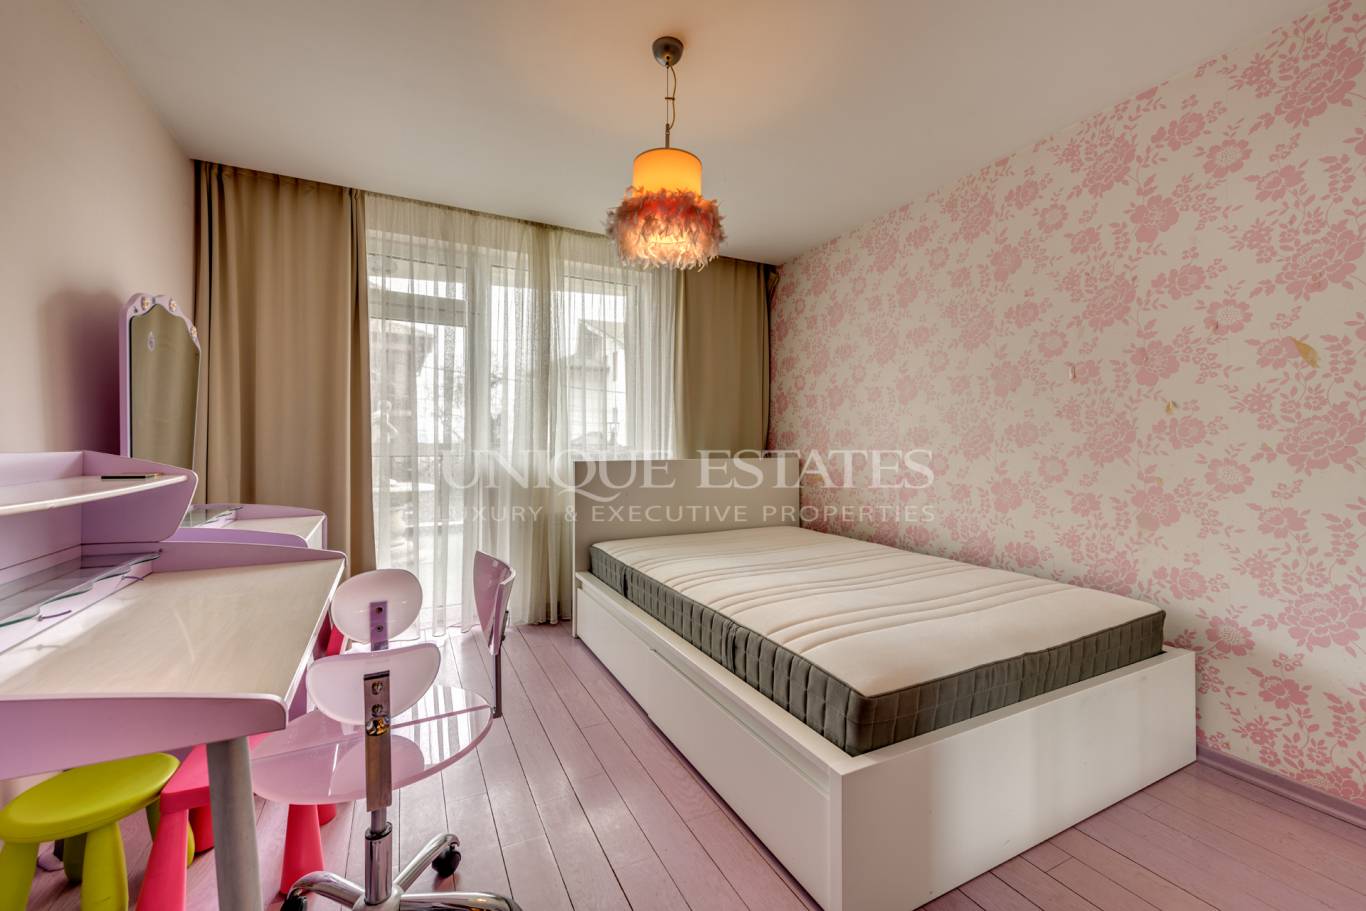 Апартамент под наем в София, Драгалевци - код на имота: K18576 - image 8